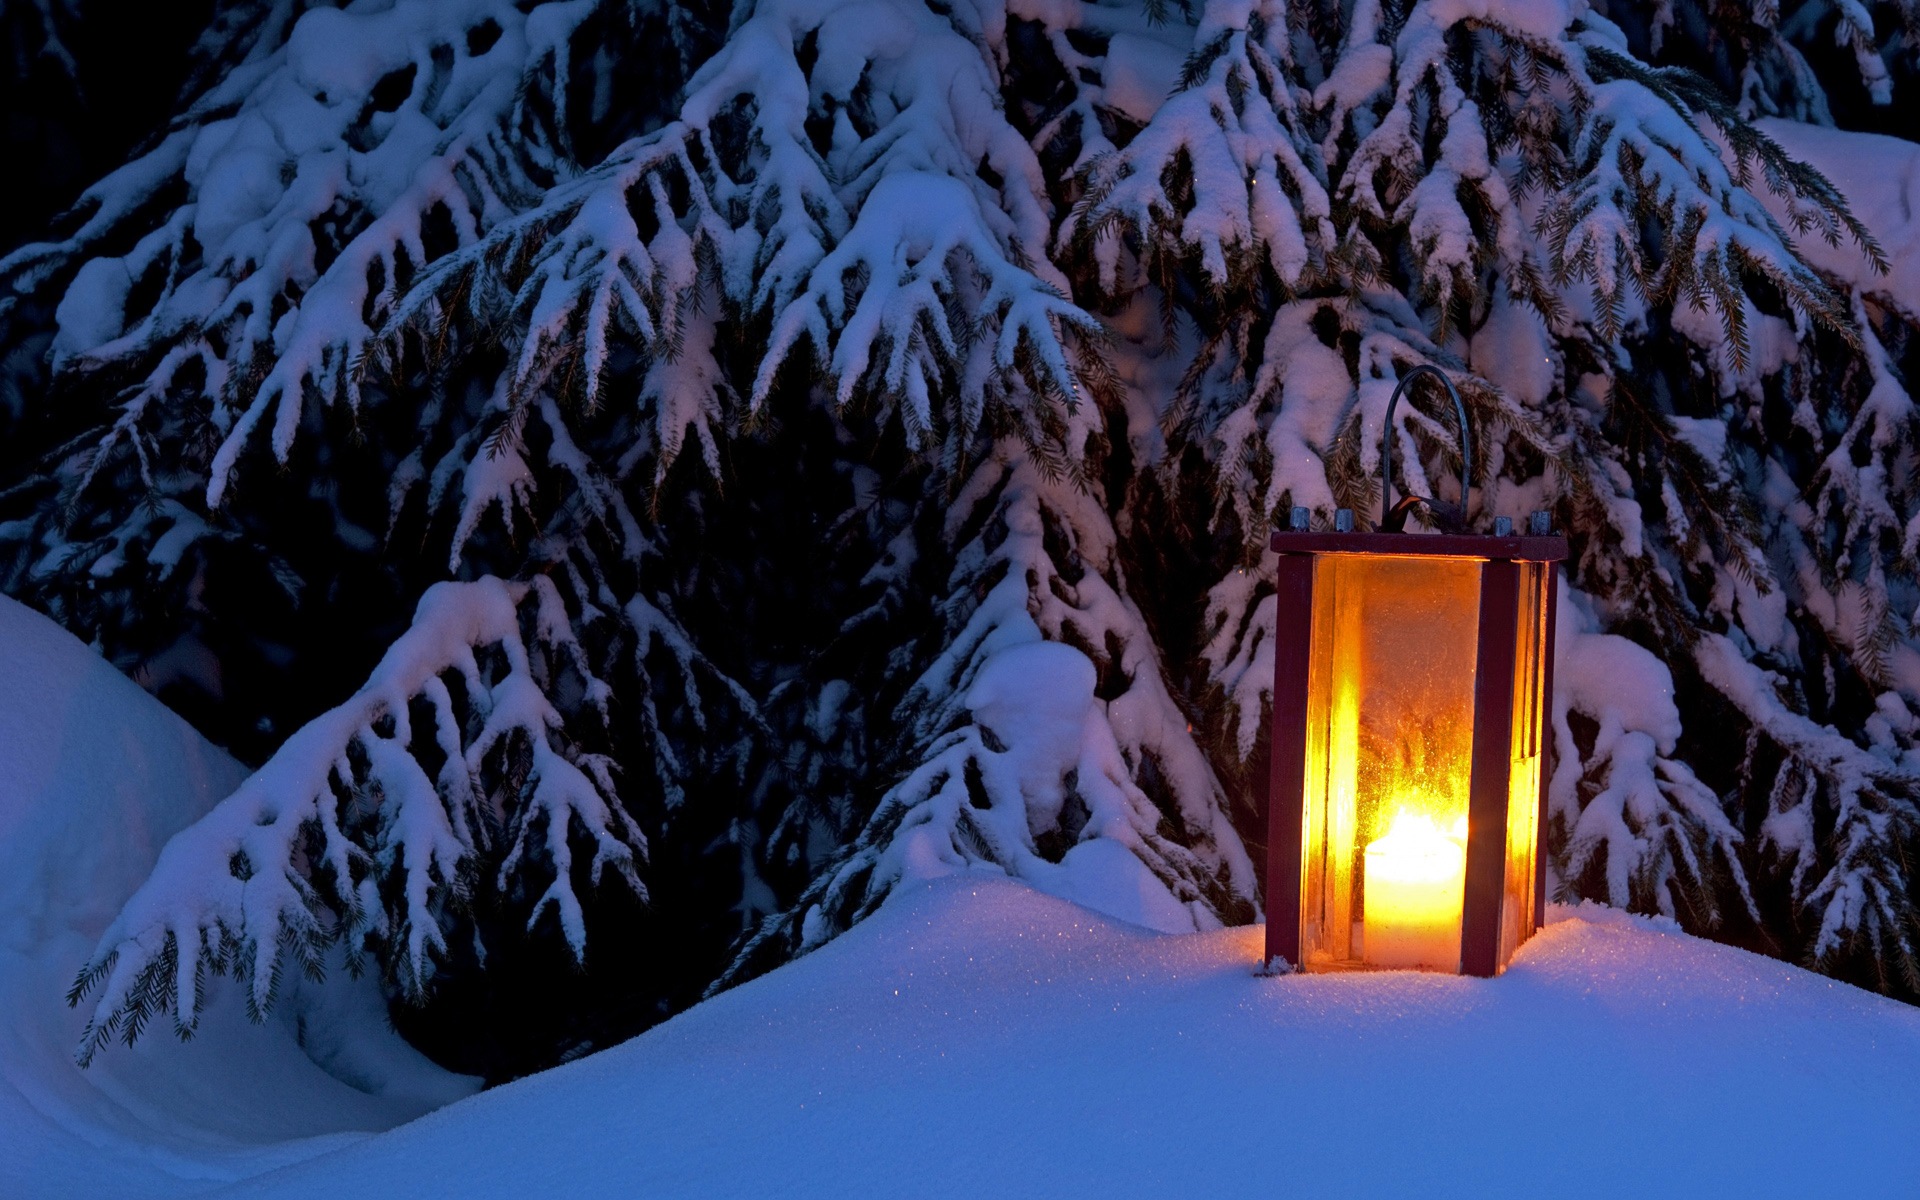 Windows 8 Theme HD Wallpapers: Nieve del invierno noche #2 - 1920x1200